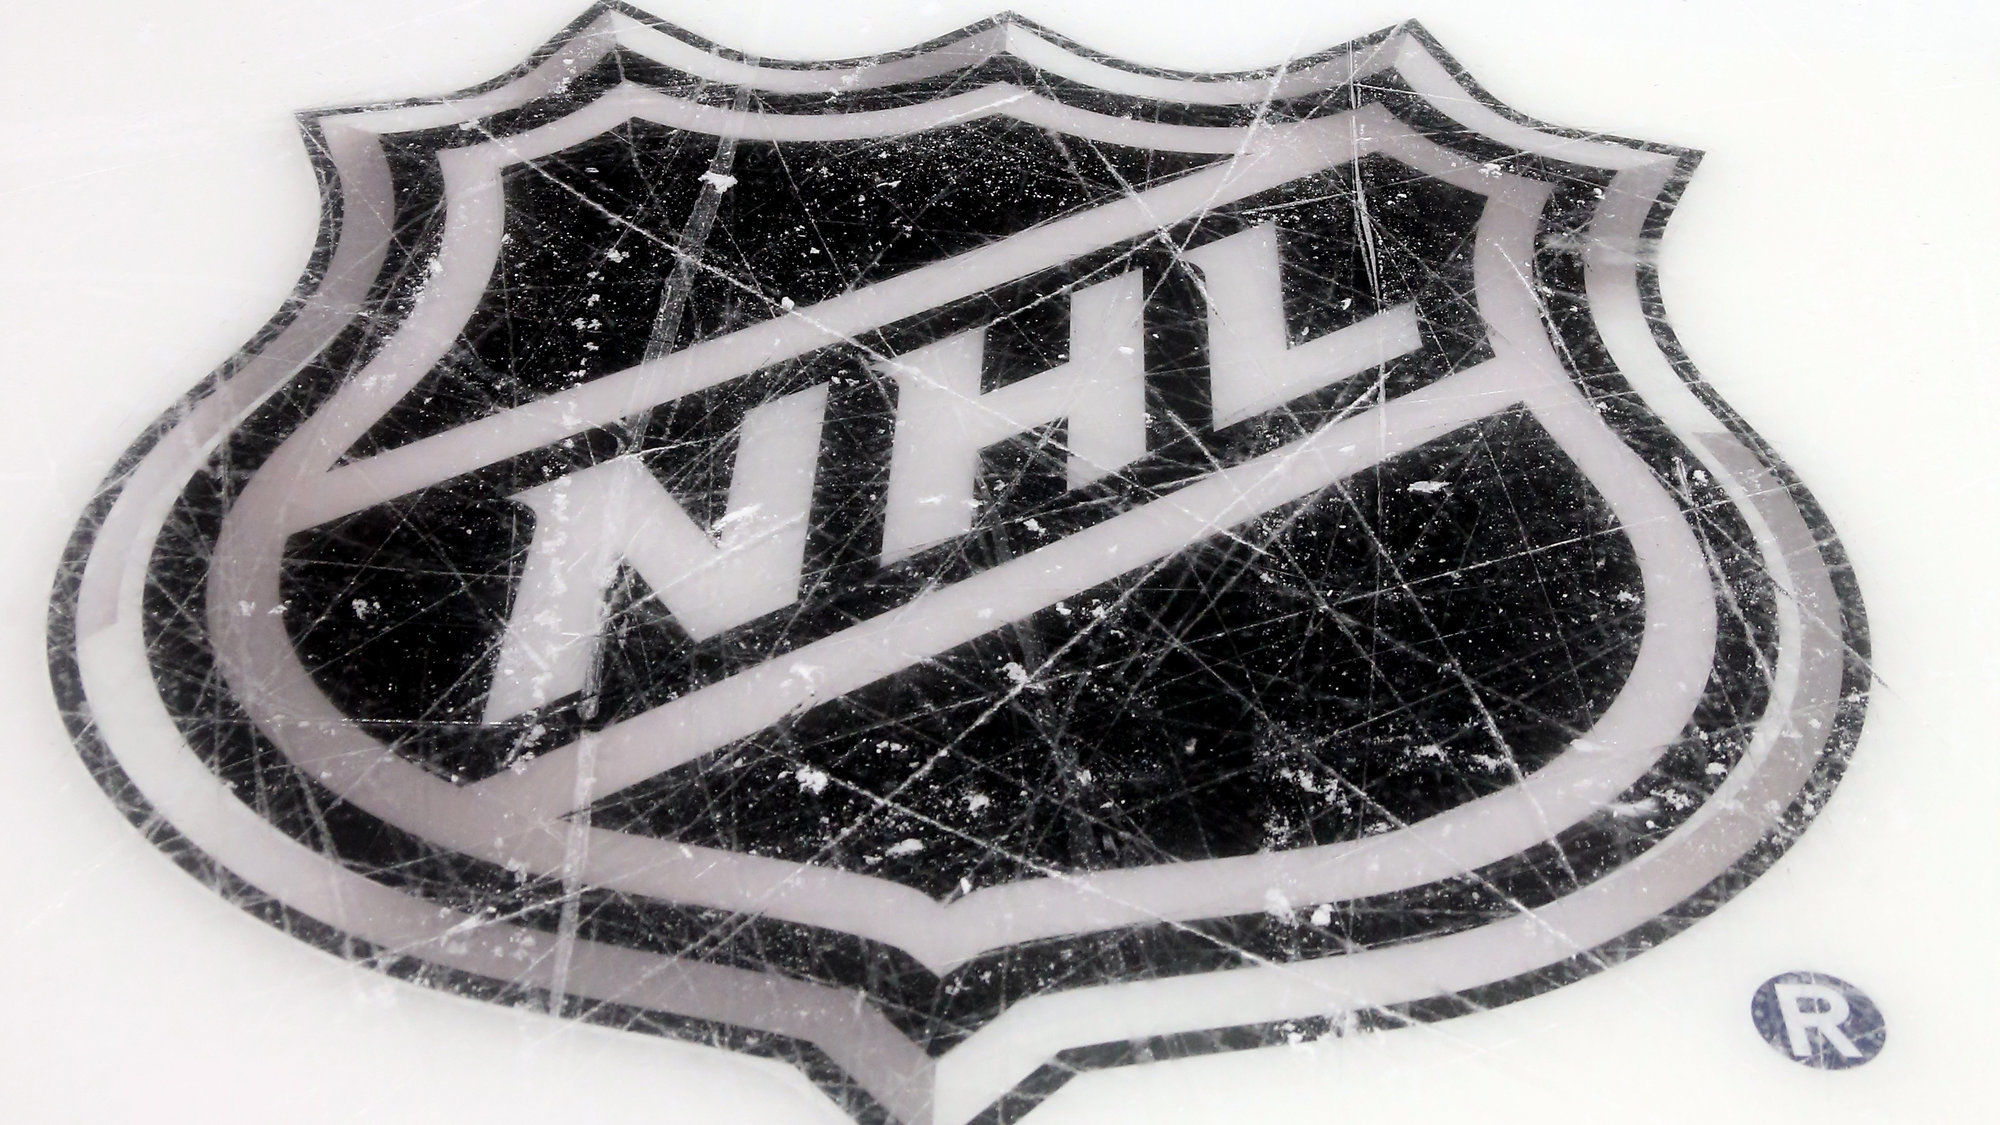 НХЛ, НБА, МЛС и МЛБ опубликовали совместное заявление по коронавирусу